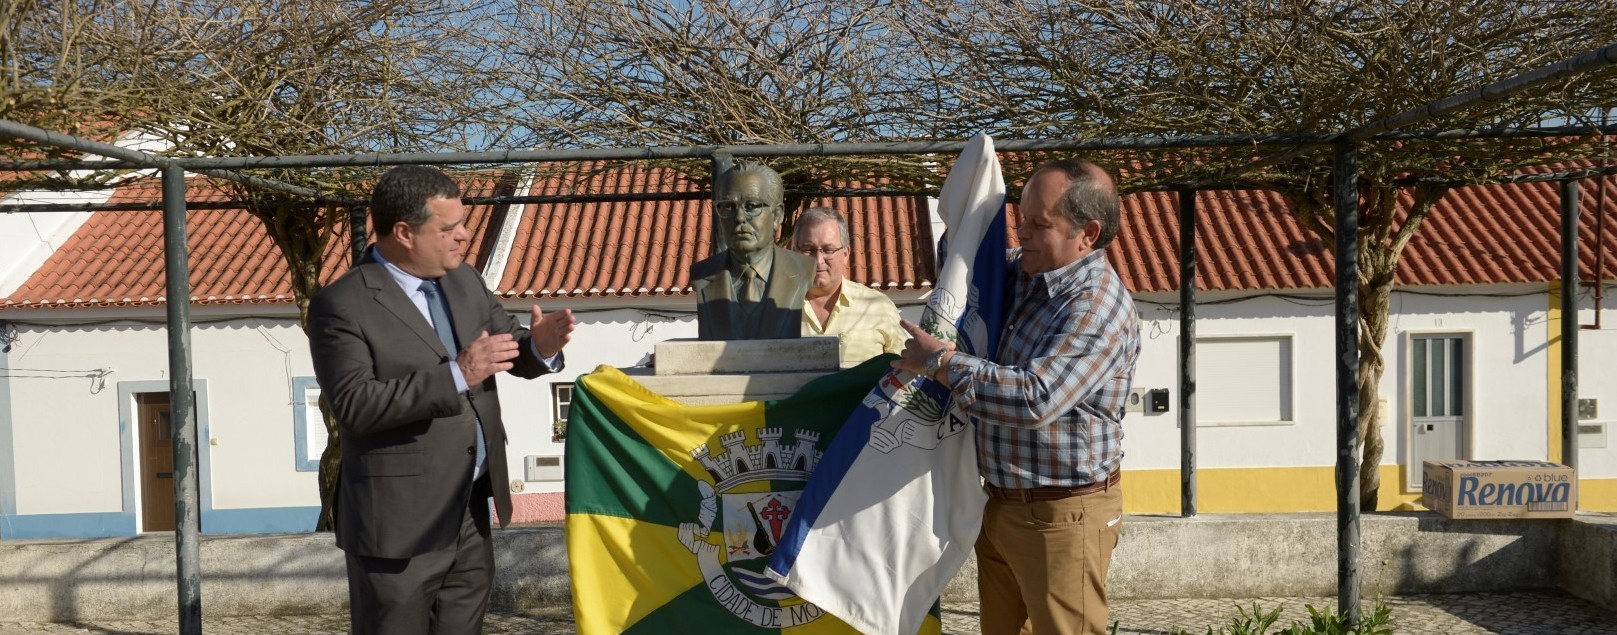 Canha celebra Dia da Vila com reposição do busto de Manuel Maurício